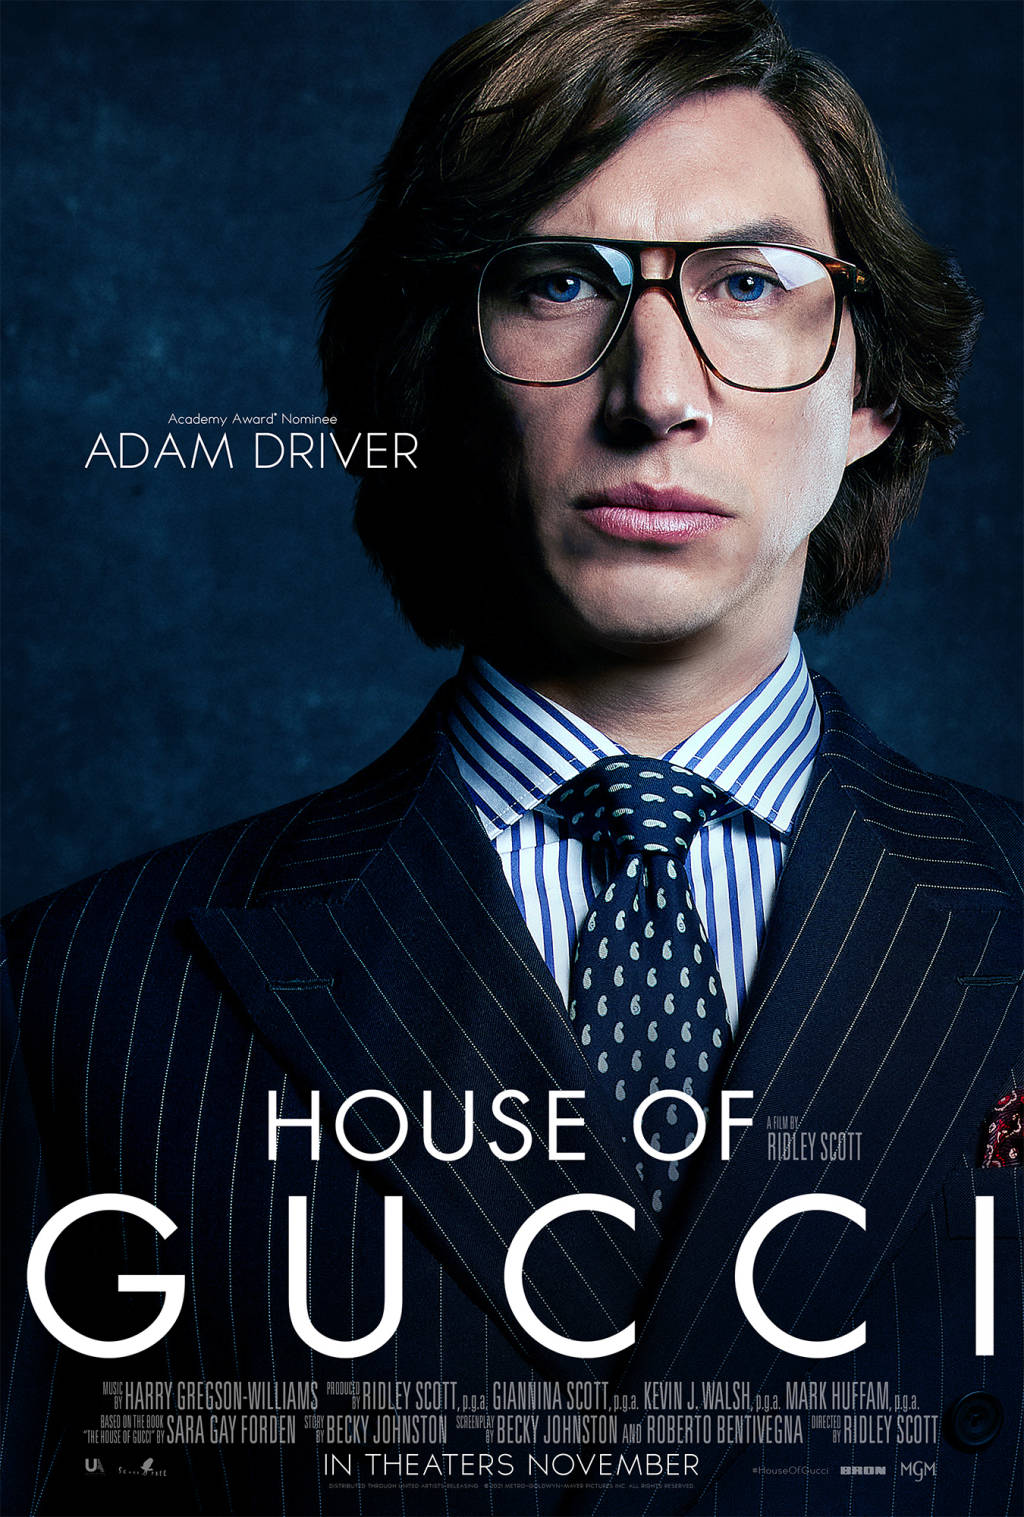 Hausvon Gucci Adam Driver Anzug Wallpaper